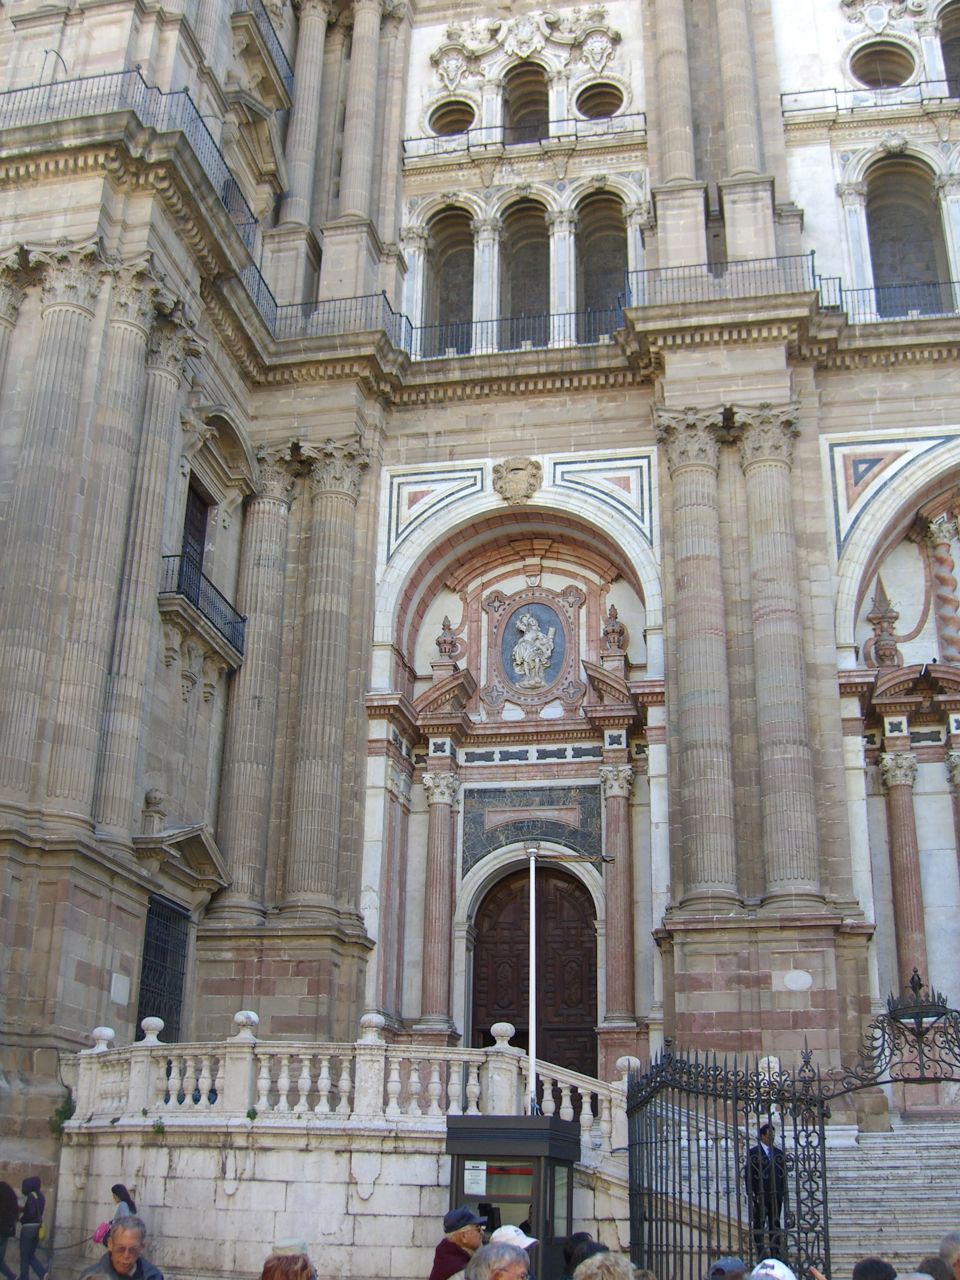 Cathedral de Malaga Entrance